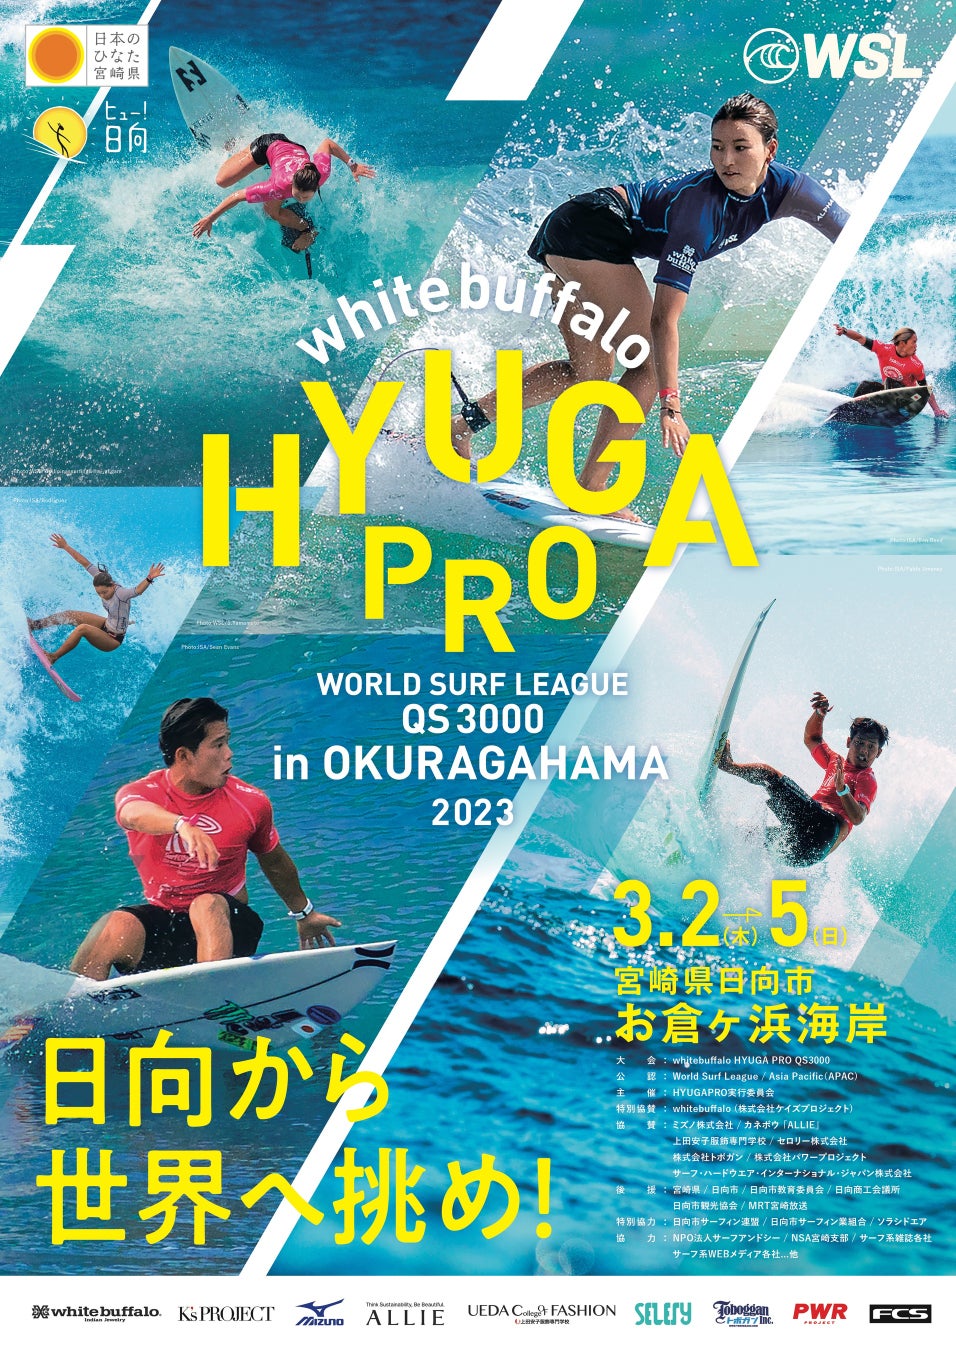 アジア最大級のサーフィン『whitebuffalo HYUGA PRO』大会が宮崎県日向市で開催決定!!